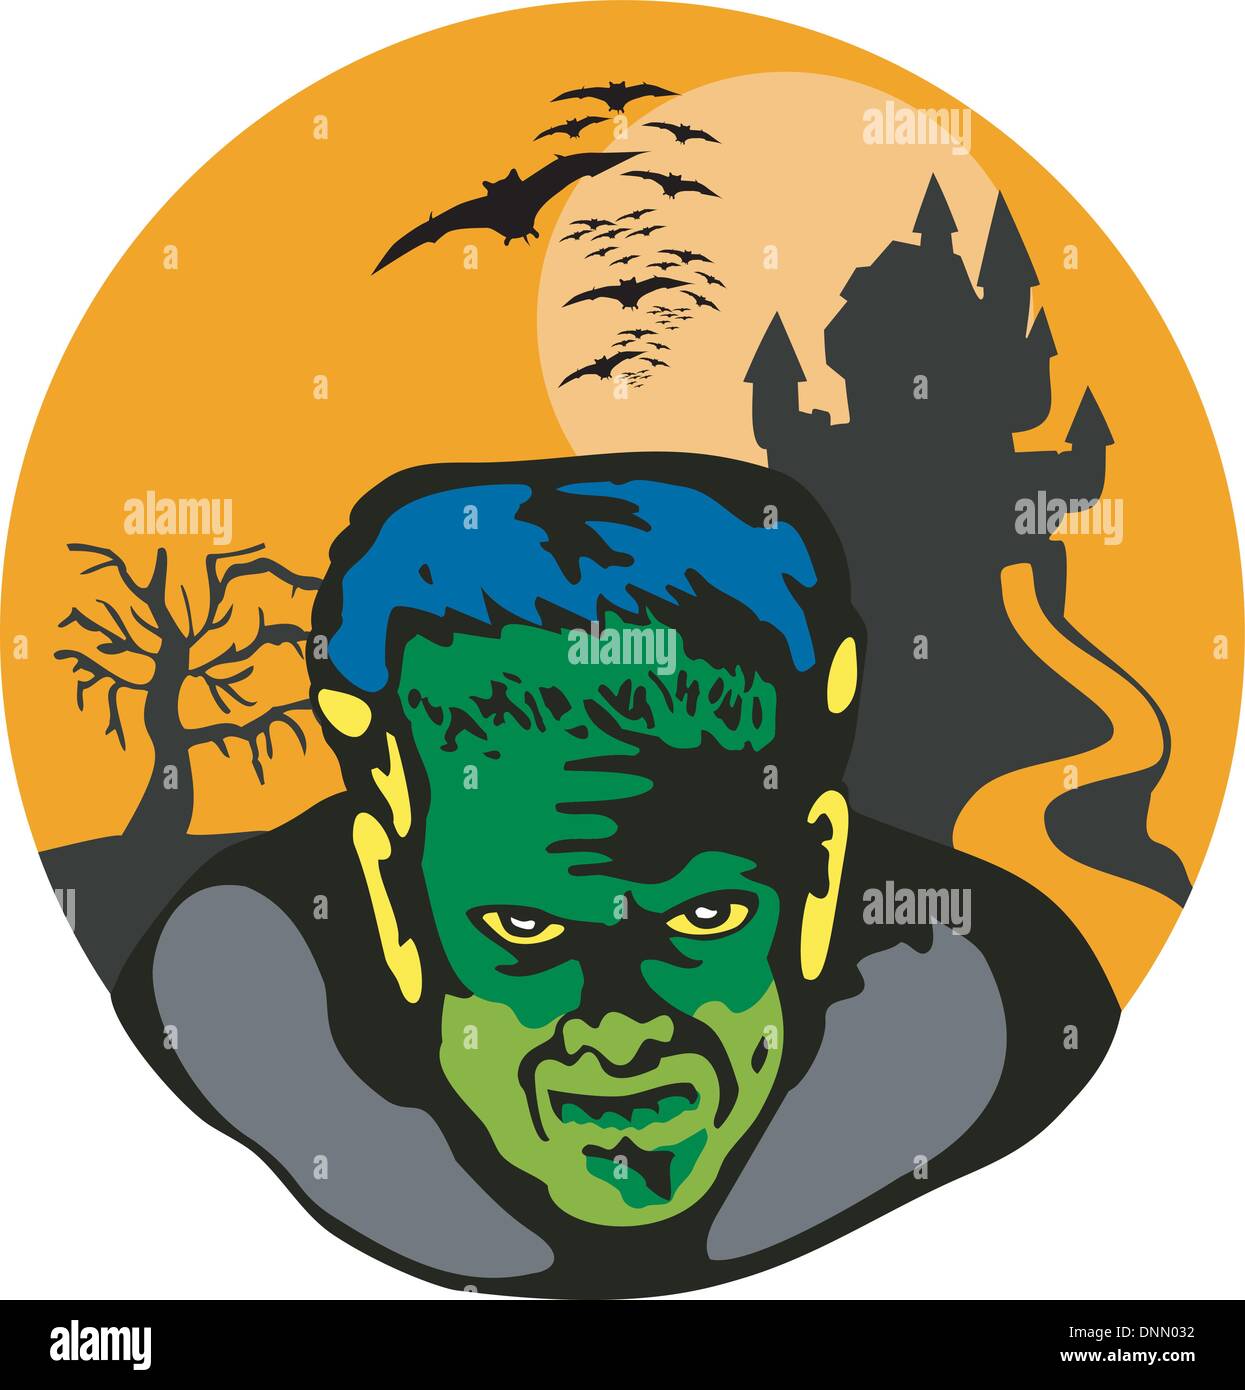 Illustration von Frankenstein vor Haunted House Kulisse im retro-Stil gemacht. Stock Vektor